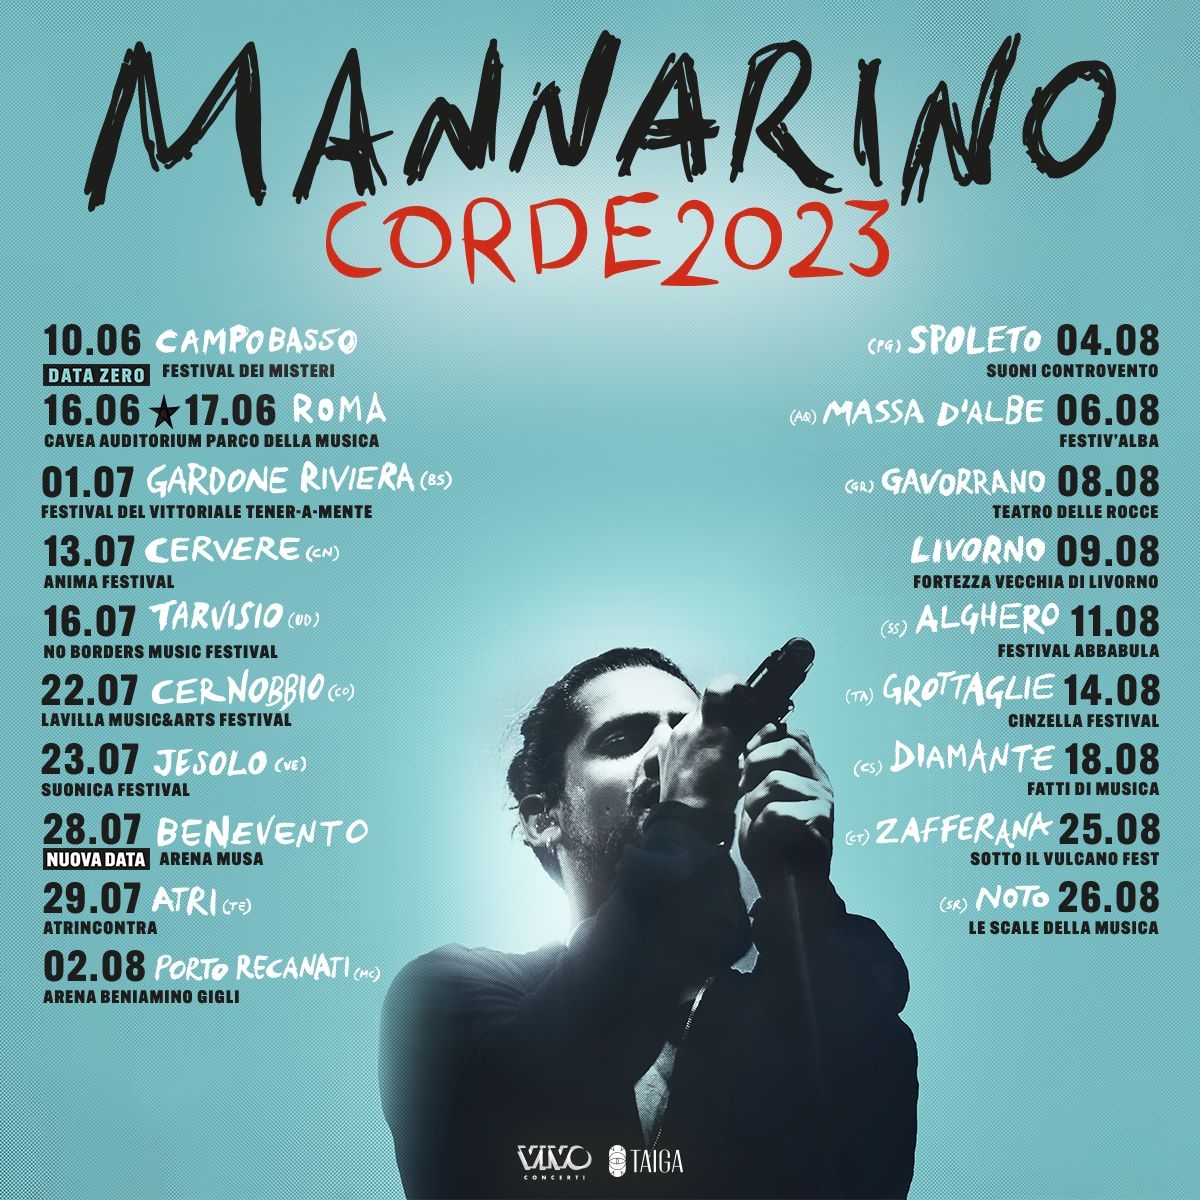 MANNARINO | PARTE DA CAMPOBASSO IL TOUR “CORDE 2023”